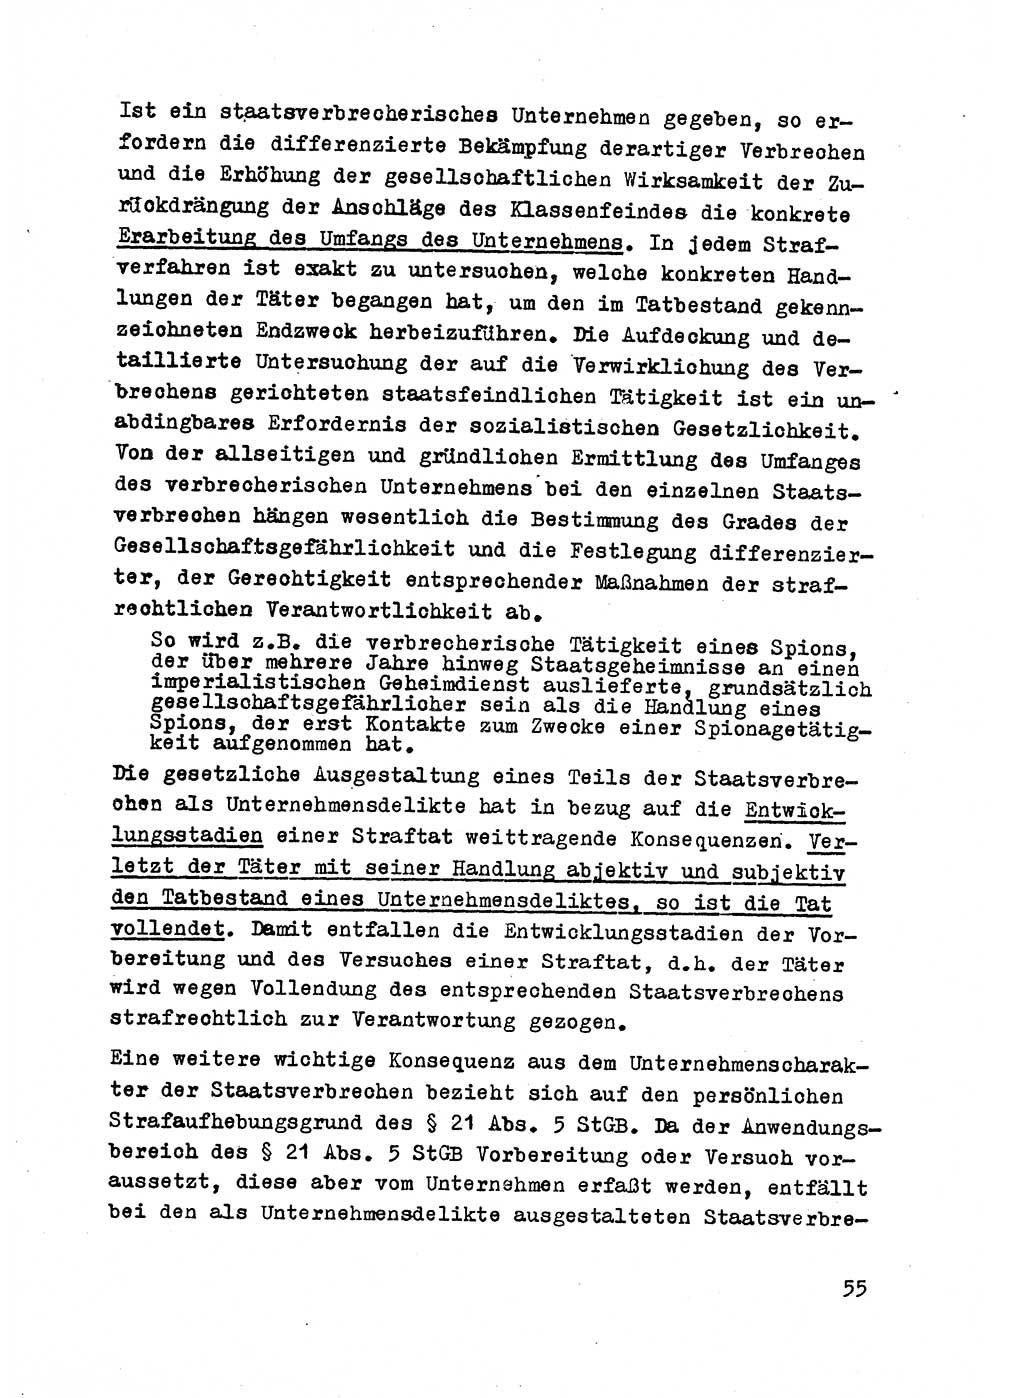 Strafrecht der DDR (Deutsche Demokratische Republik), Besonderer Teil, Lehrmaterial, Heft 2 1969, Seite 55 (Strafr. DDR BT Lehrmat. H. 2 1969, S. 55)